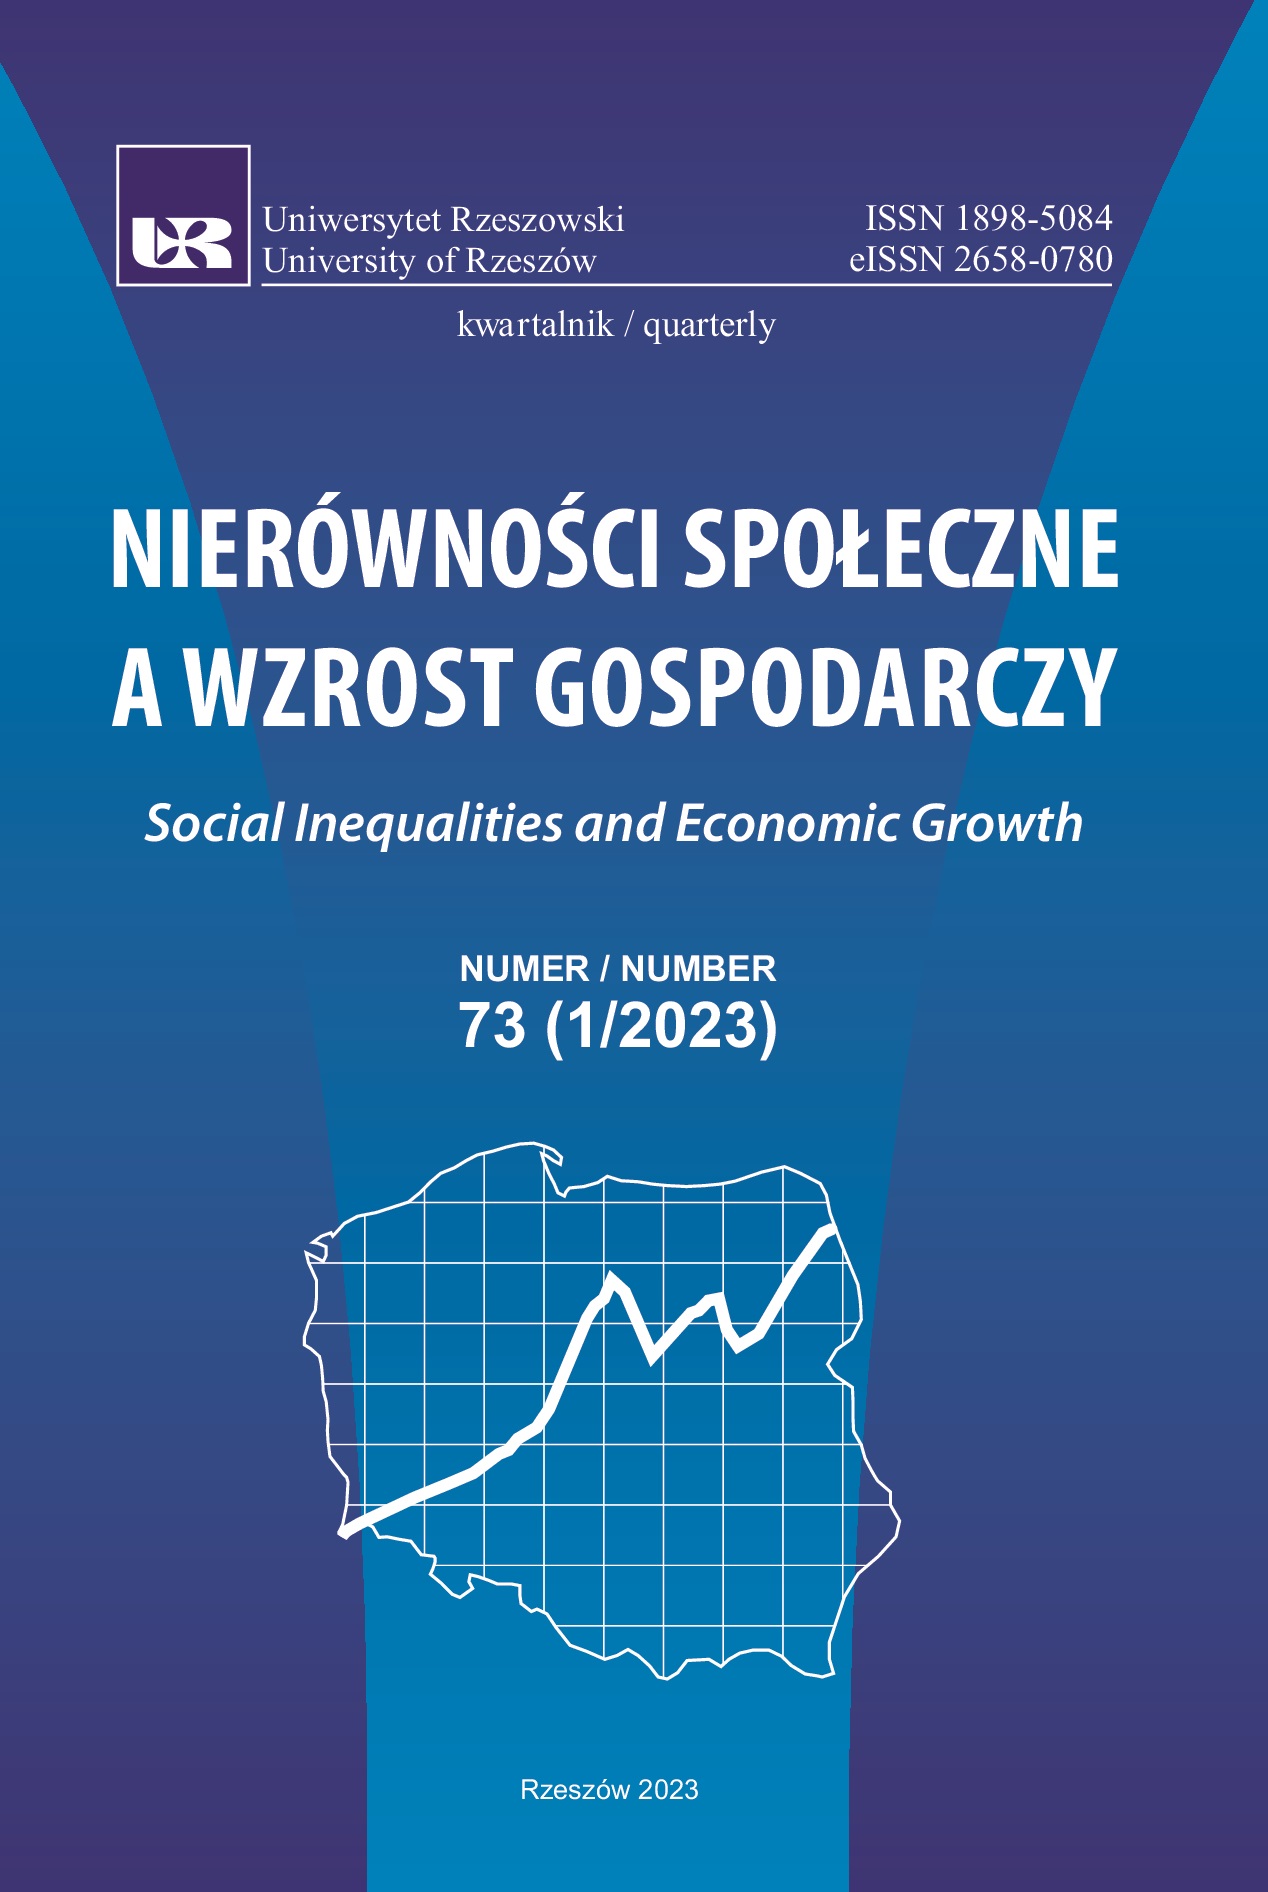 Problemy i wyzwania prognozowania produkcji energii
elektrycznej z OZE w Polsce
w kontekście współczesnych kryzysów